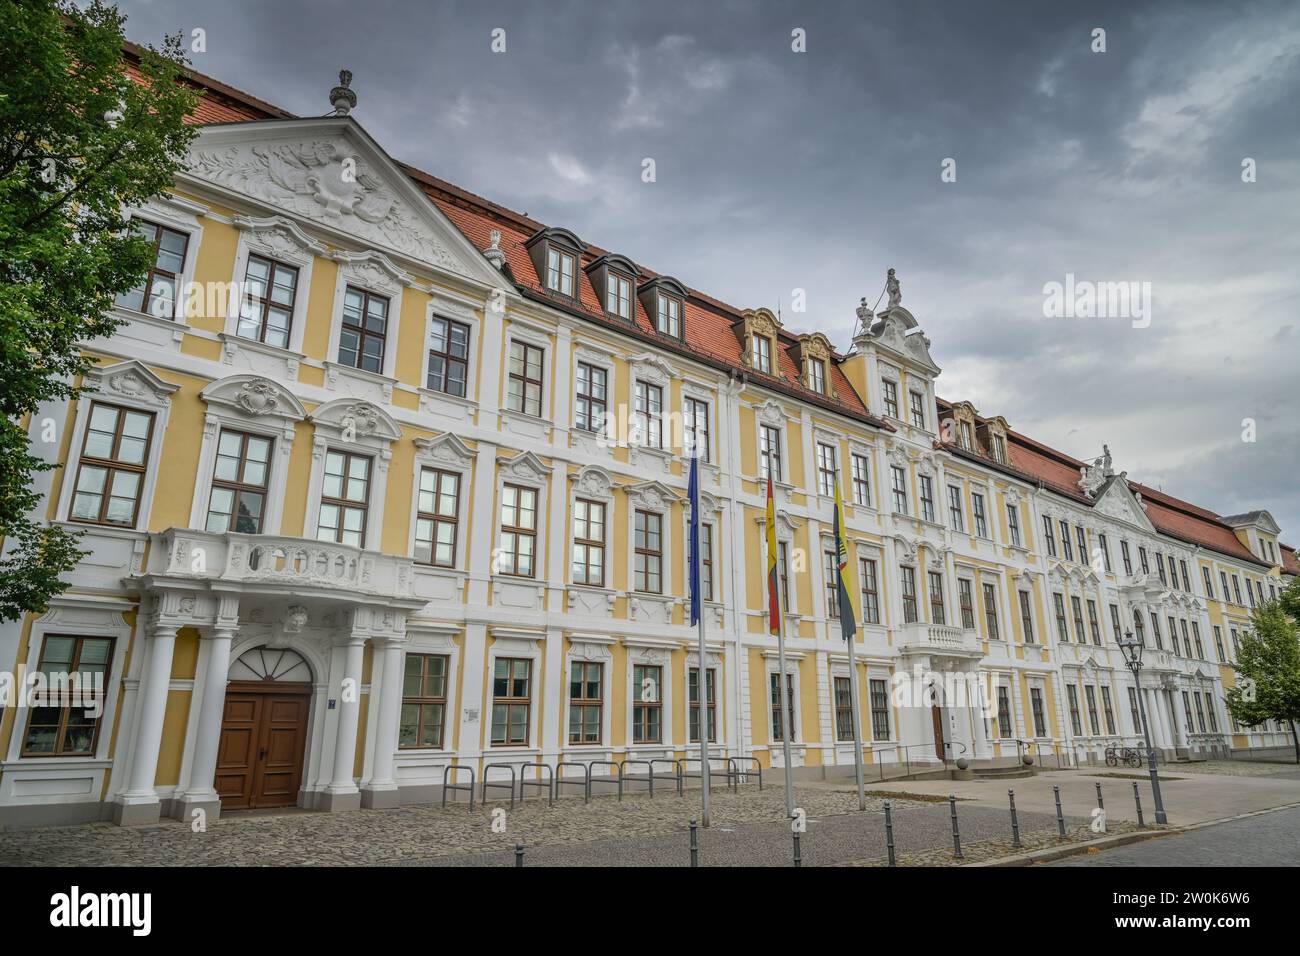 Landtag, Domplatz, Magdeburg, Sachsen-Anhalt, Deutschland Stockfoto